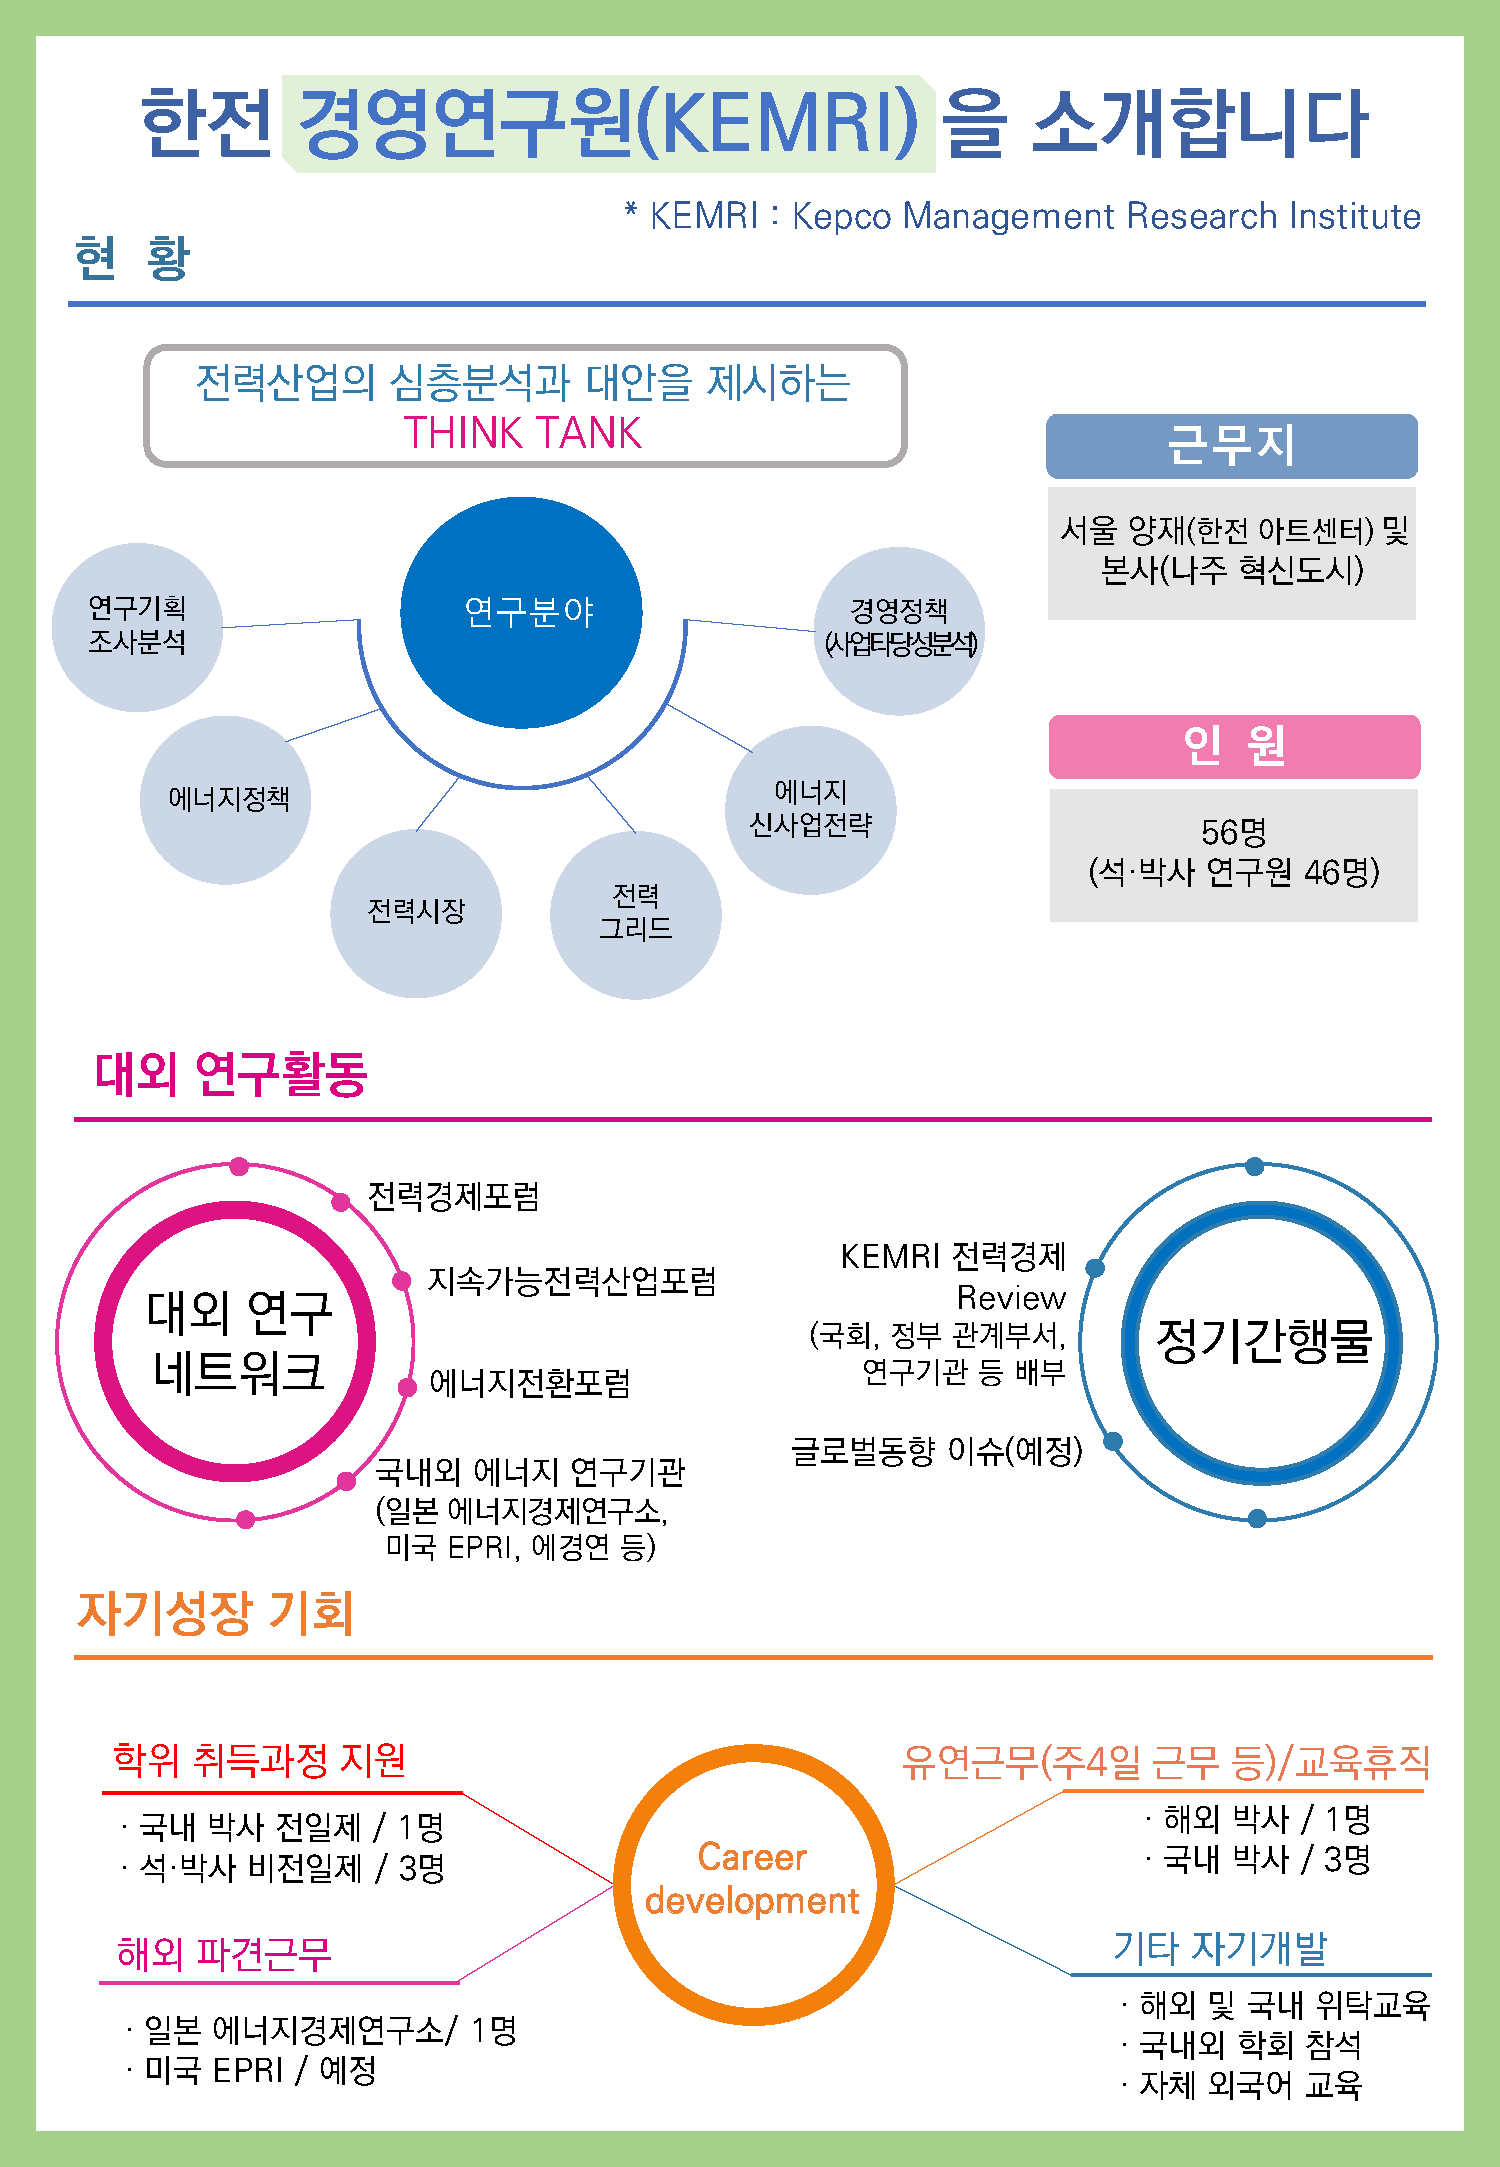 2020_한전 경영연구원 소개 팜플렛_페이지_1.png